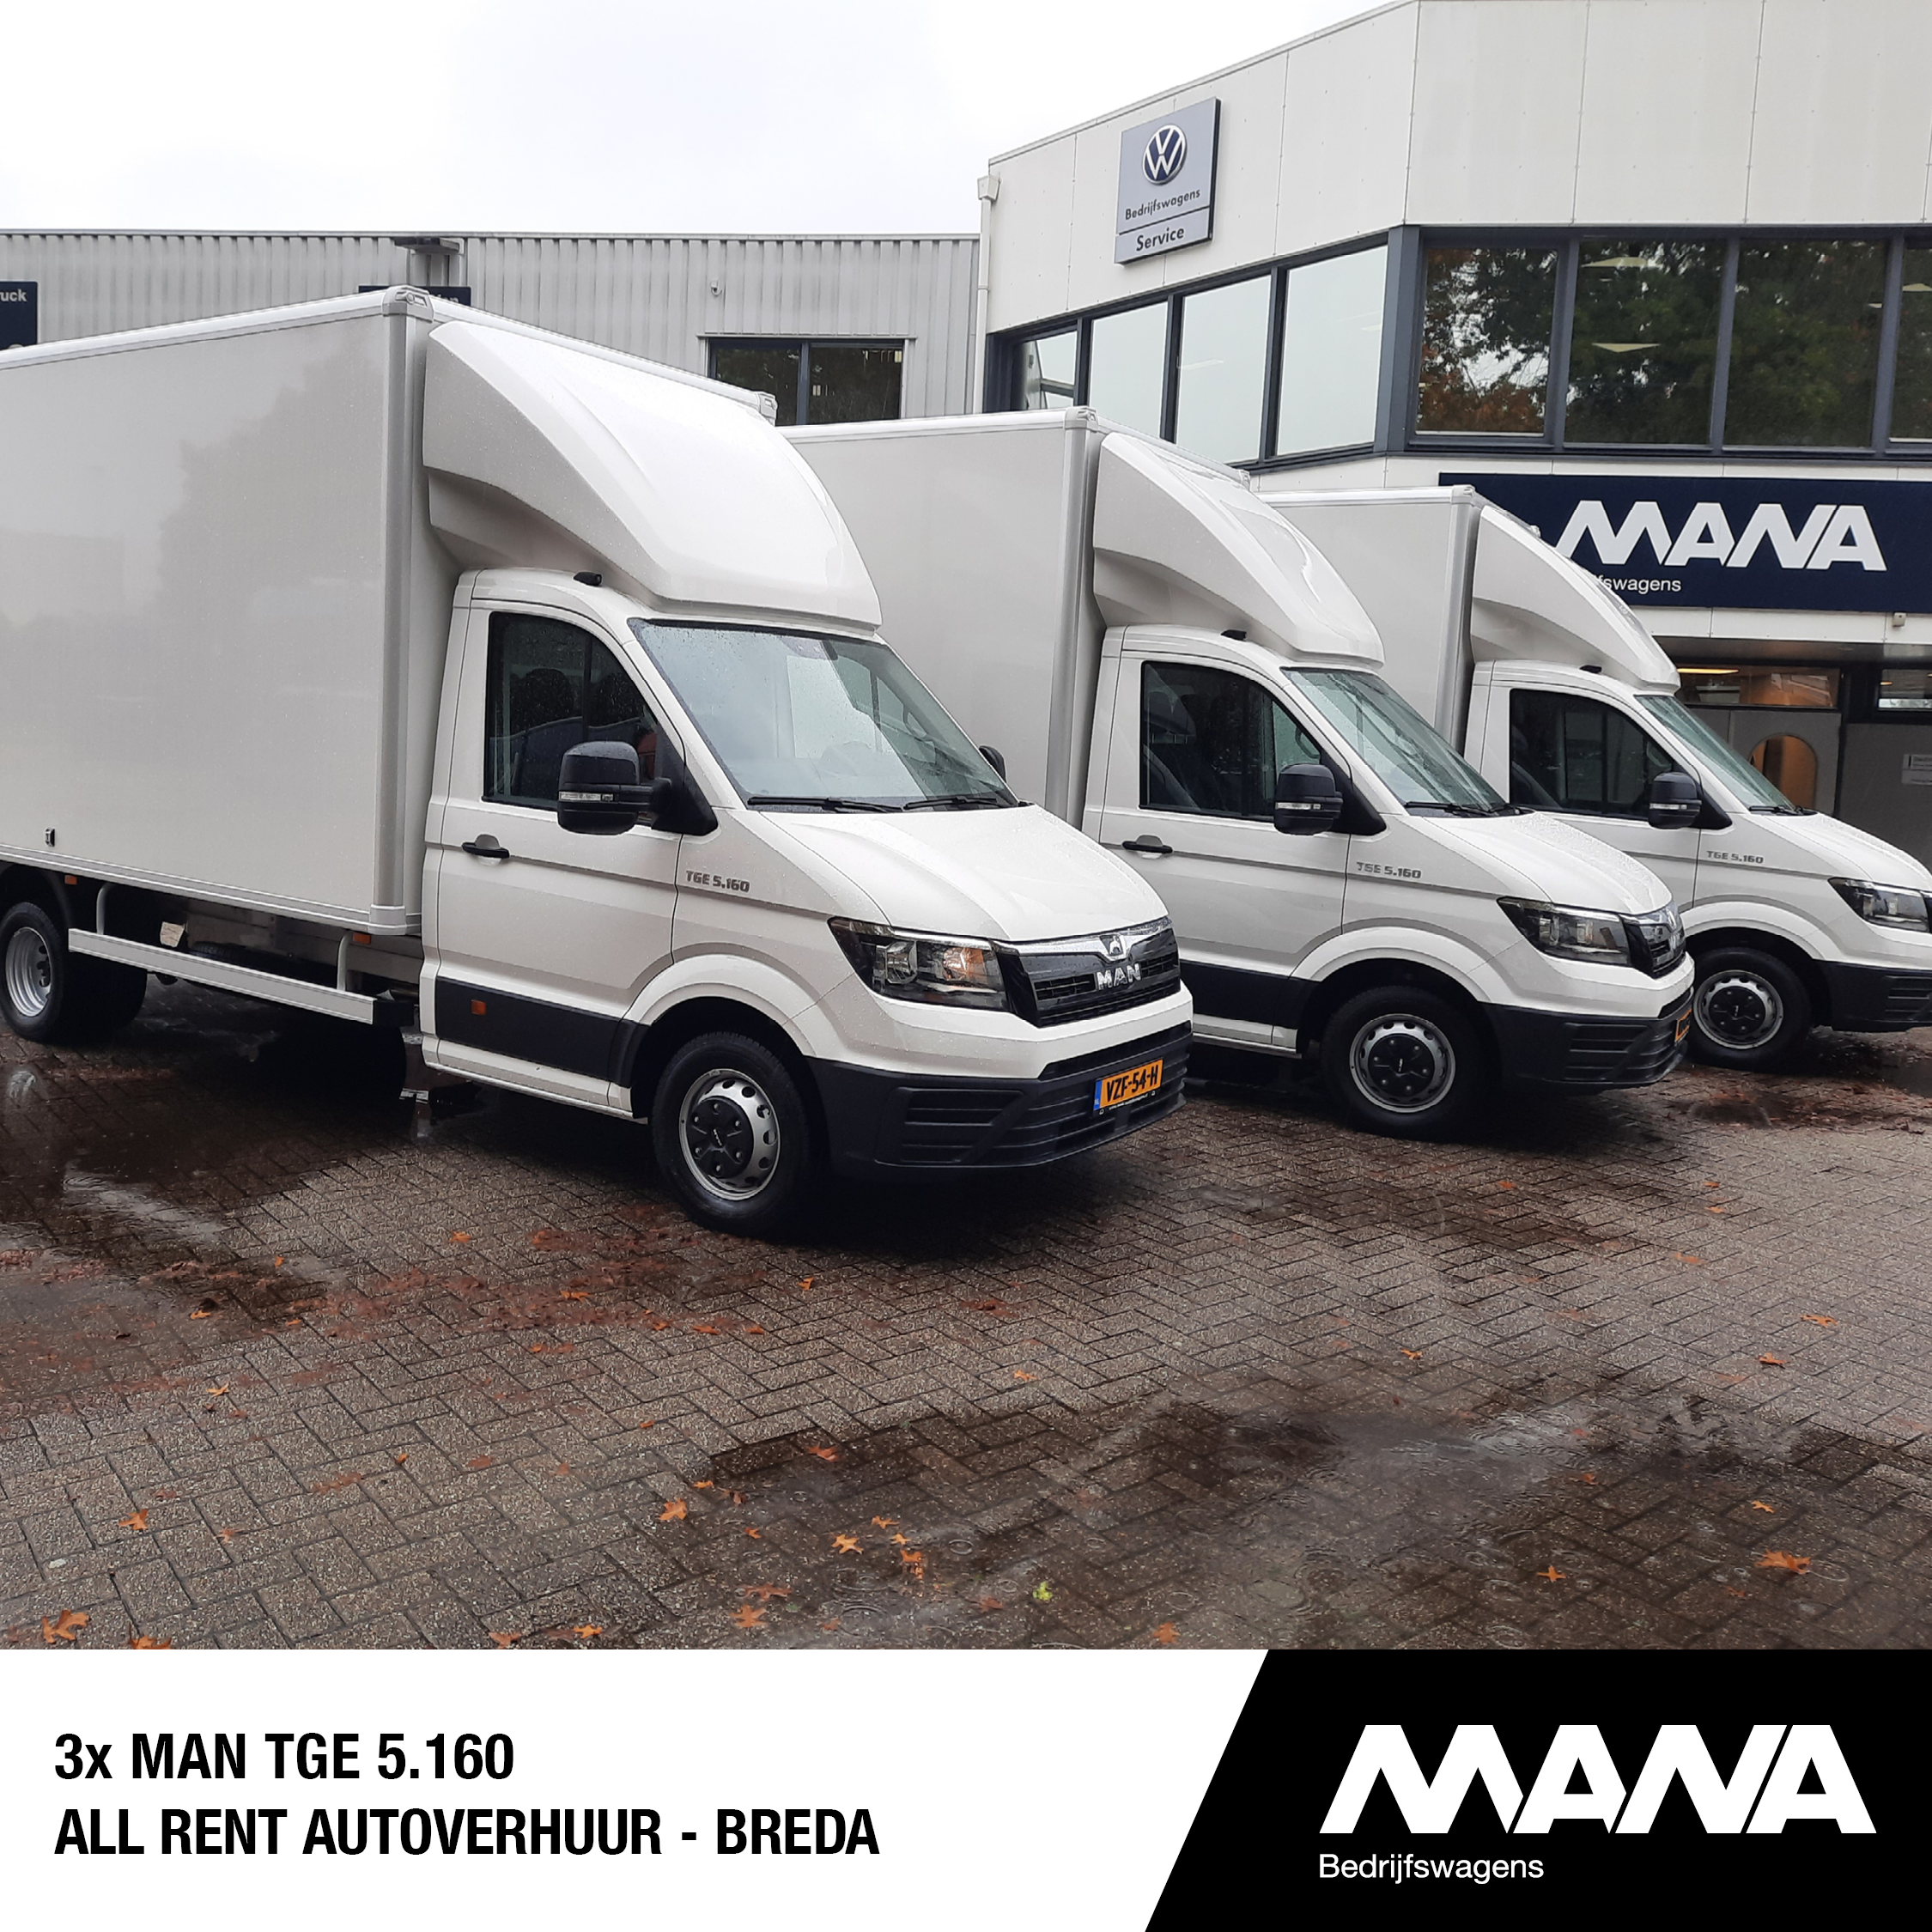 3x MAN TGE 5.160 All Rent Autoverhuur - Breda